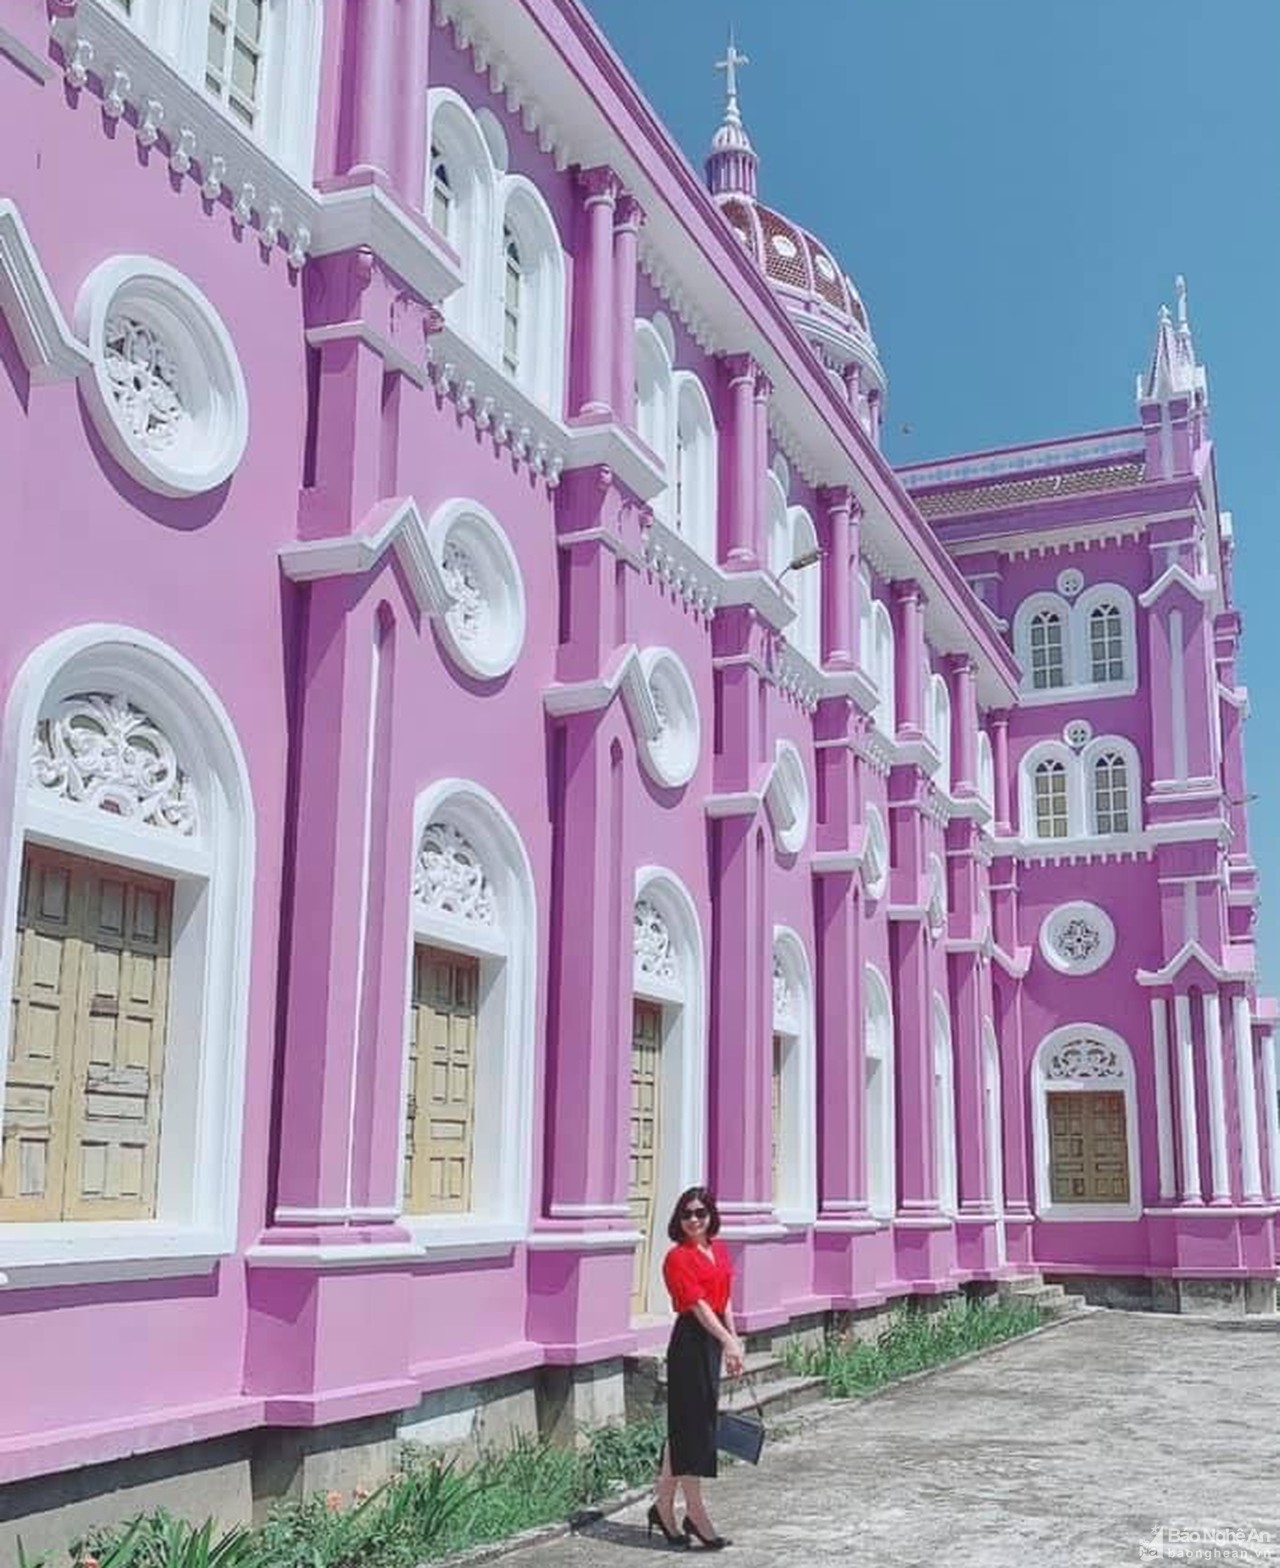 Khám phá nhà thờ màu tím độc đáo ở Nghệ An